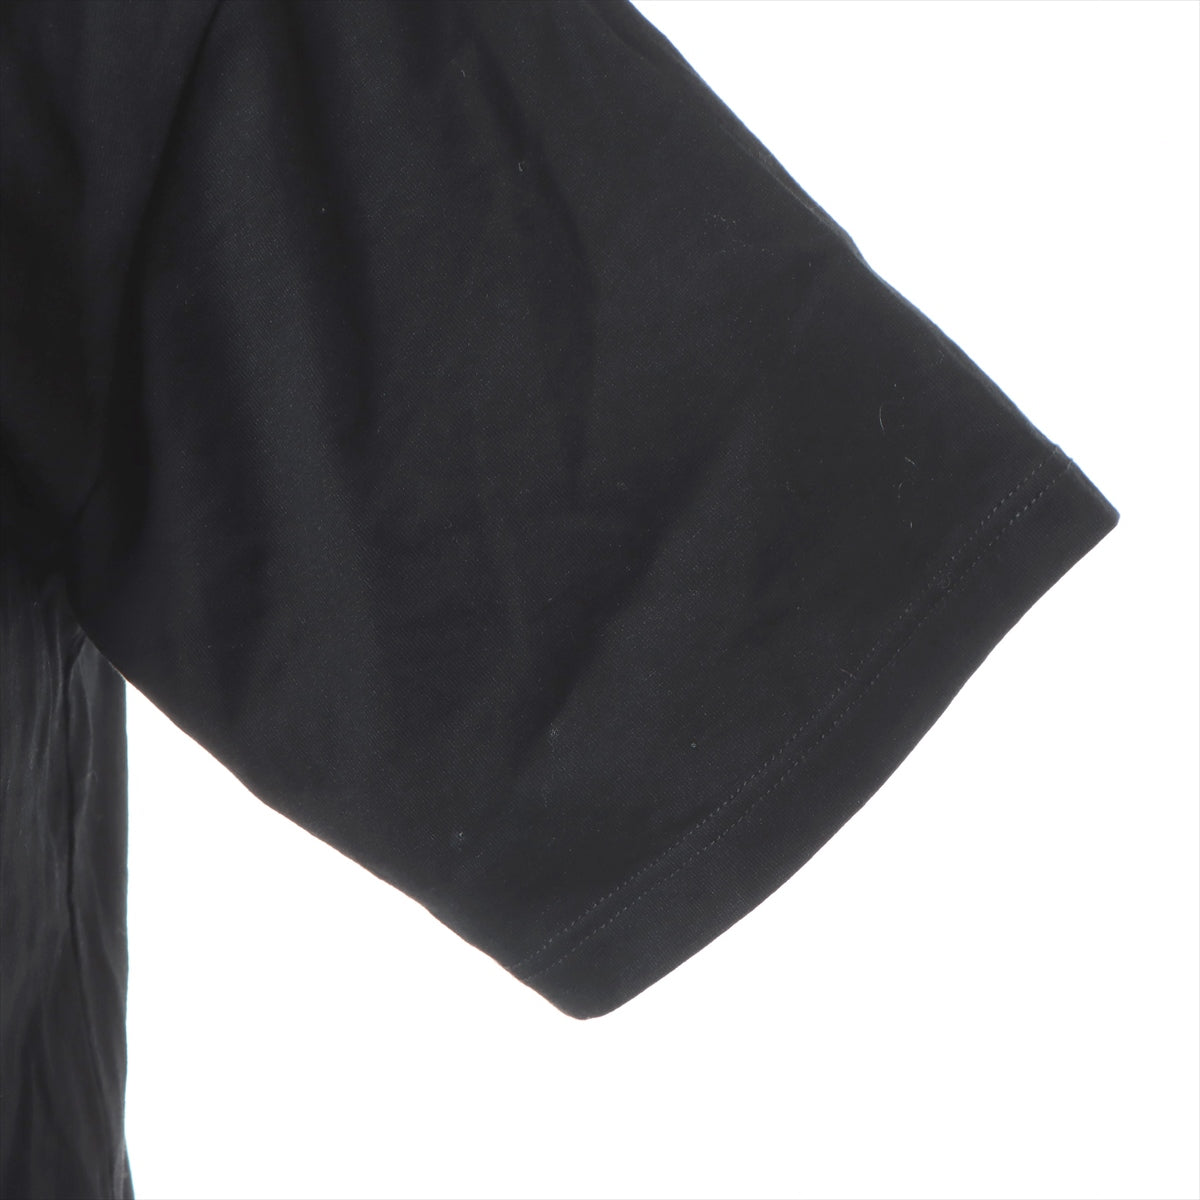 セリーヌ コットン Tシャツ XS メンズ ブラック  ロゴ